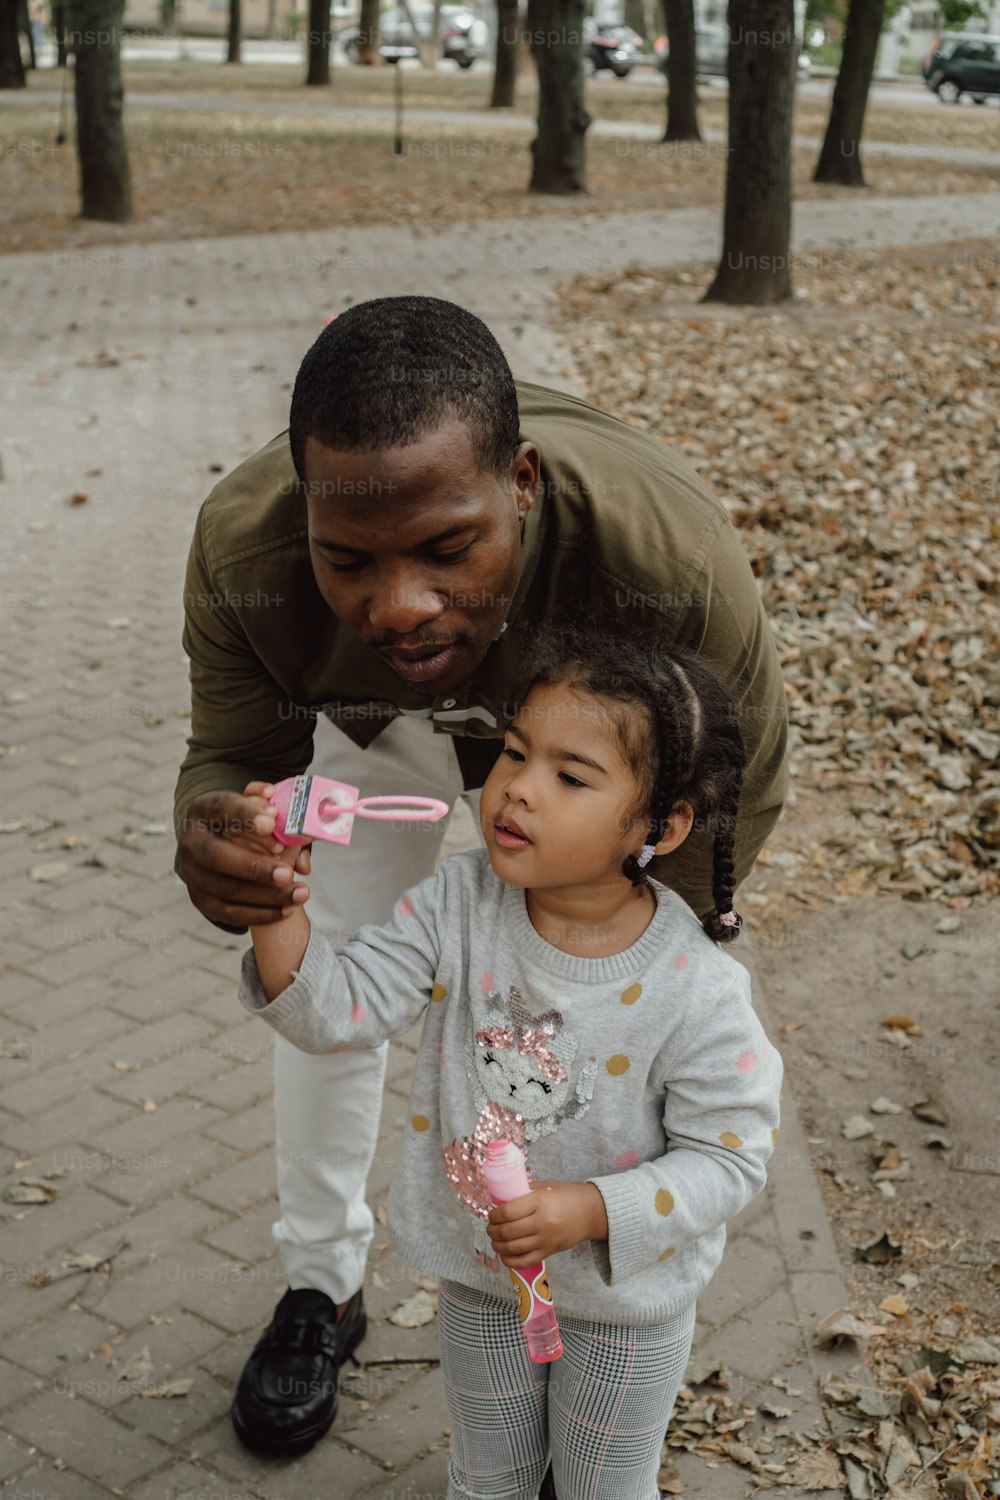 Un hombre sosteniendo un cepillo de dientes a una niña pequeña